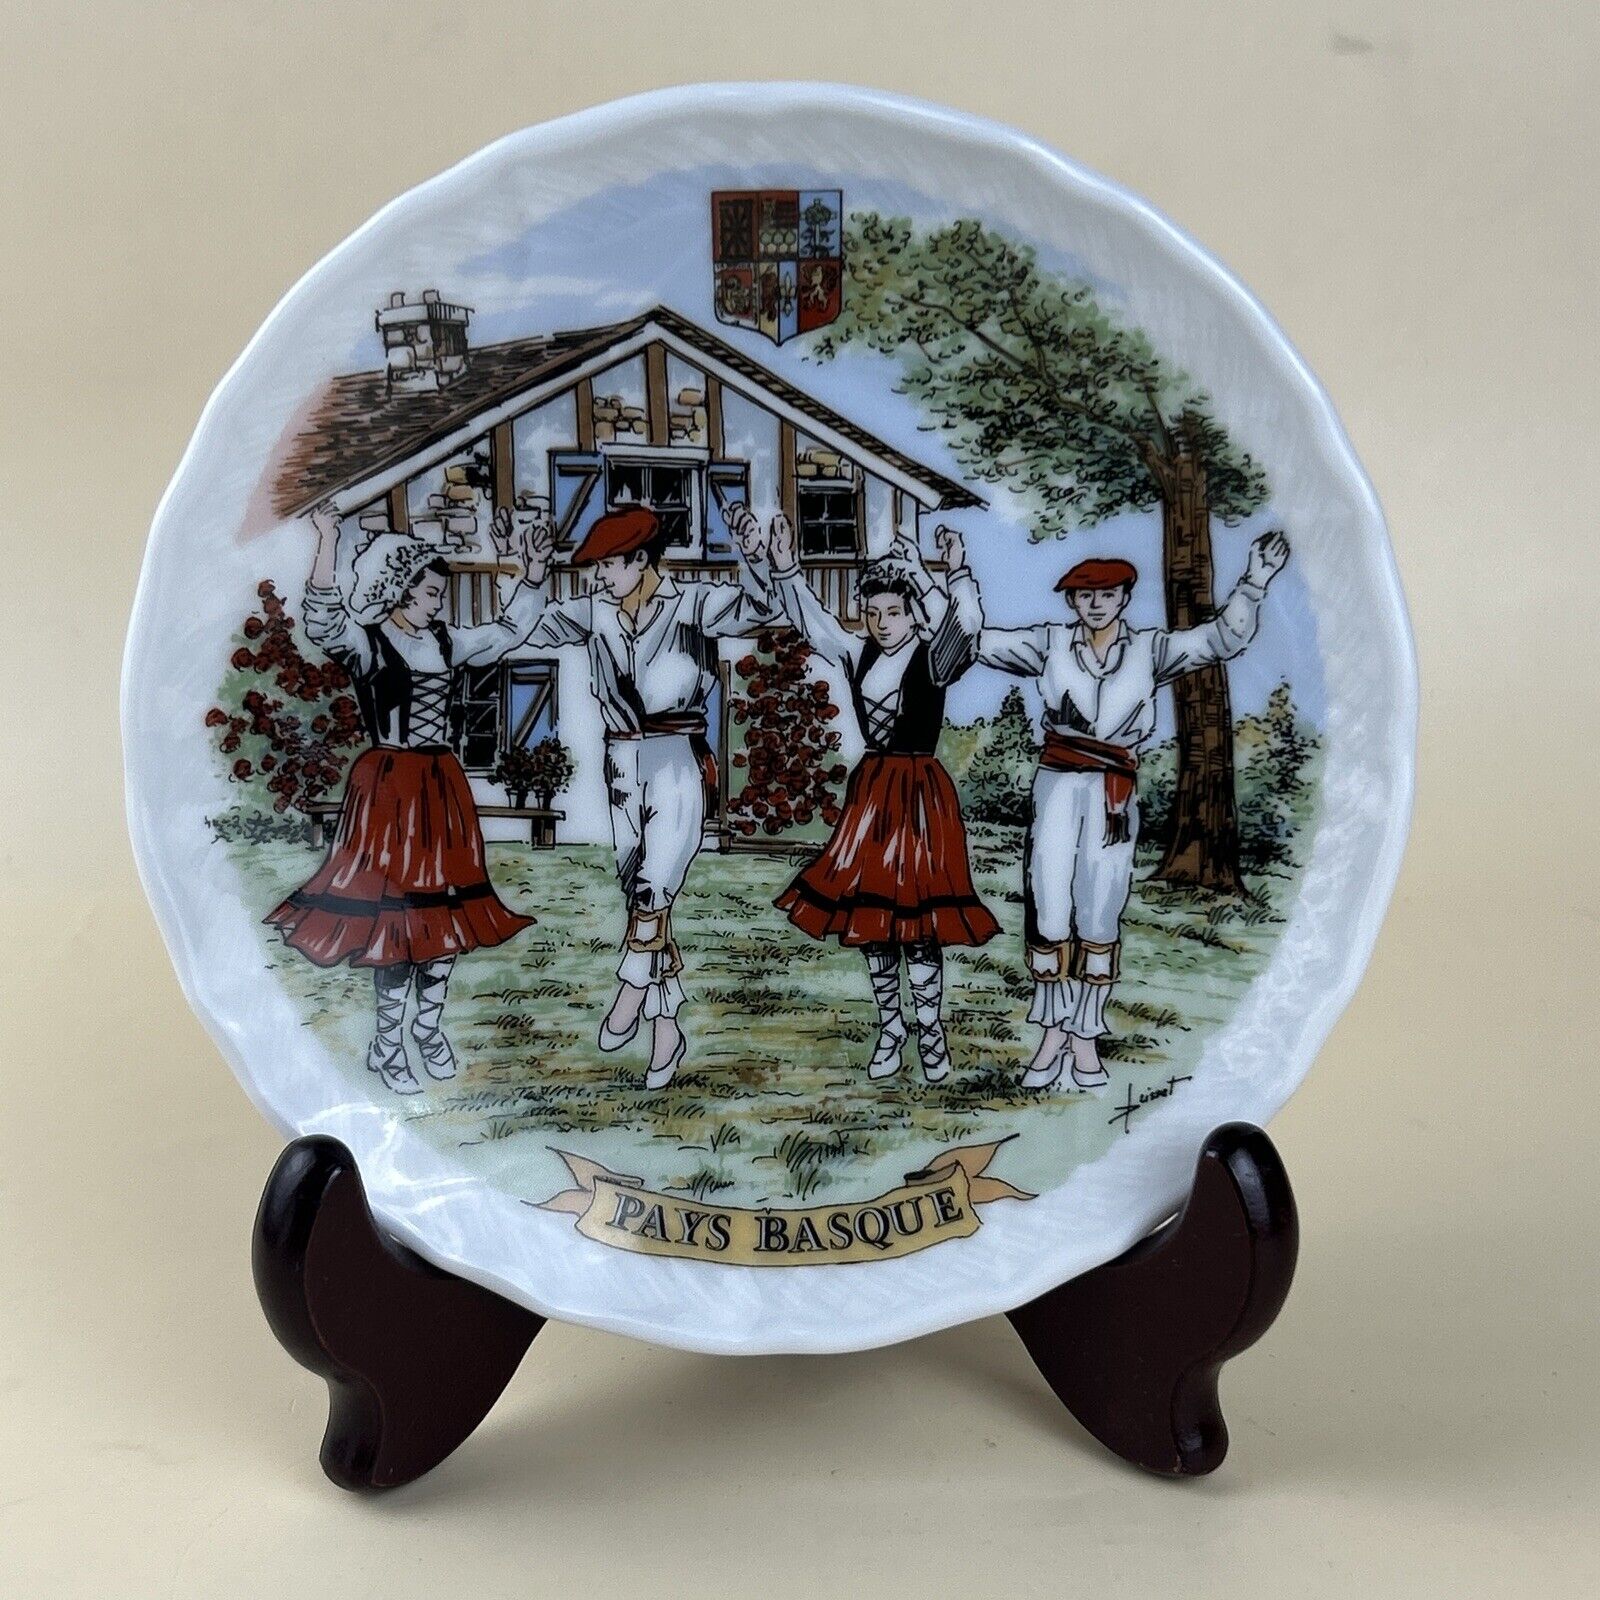 1999 Pays Basque A. Lhonneur Porcelain Plate 5.75\'\' Basque Country Dancing Scene